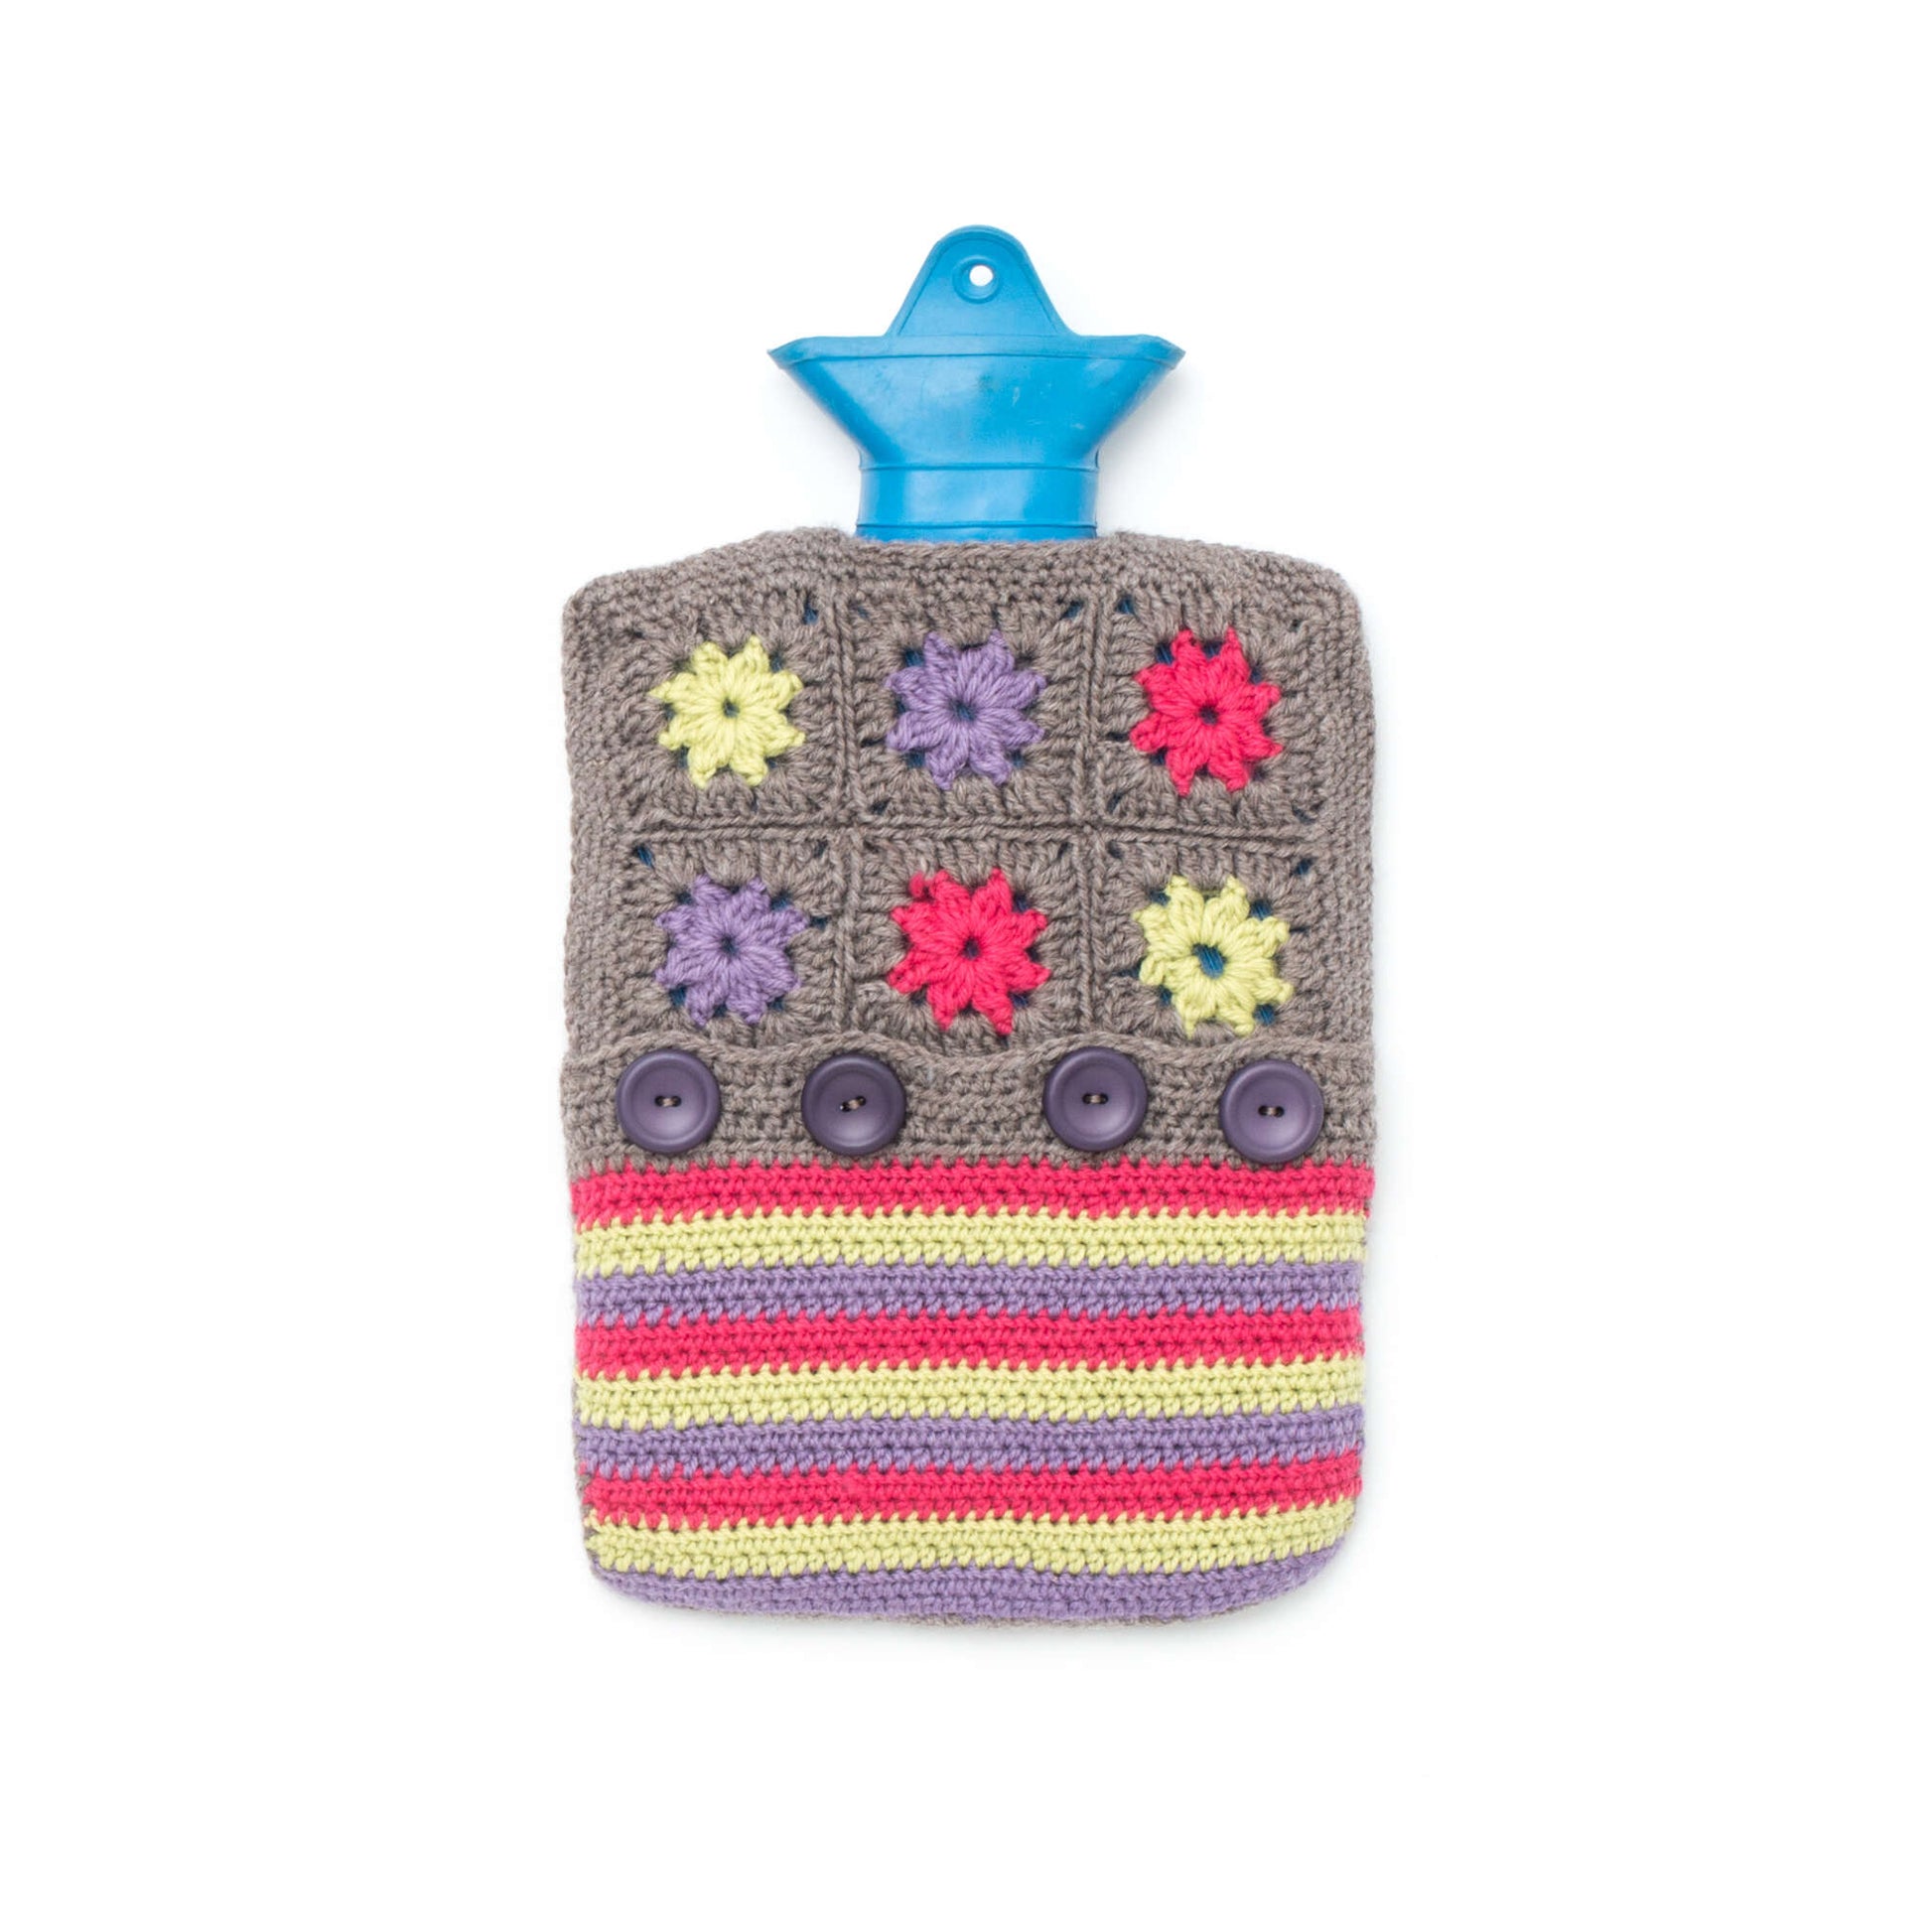 Free Patons Crochet Color Wheel Hot Water Bottle Cozy Pattern